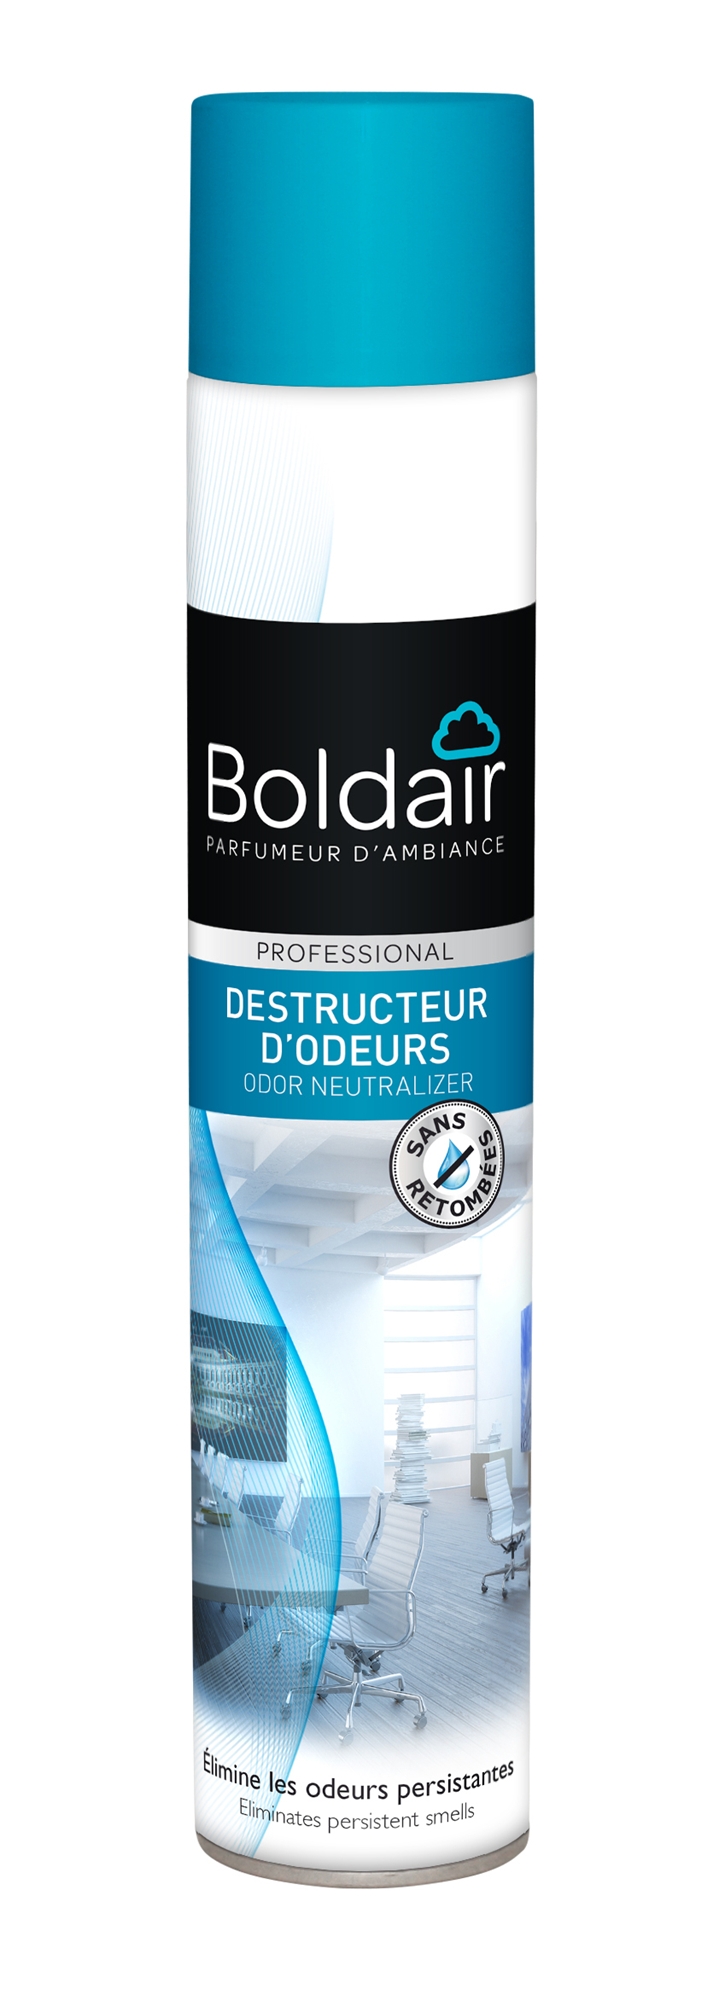 Boldair destructeur d'odeurs textiles - Droguerie Bejottes